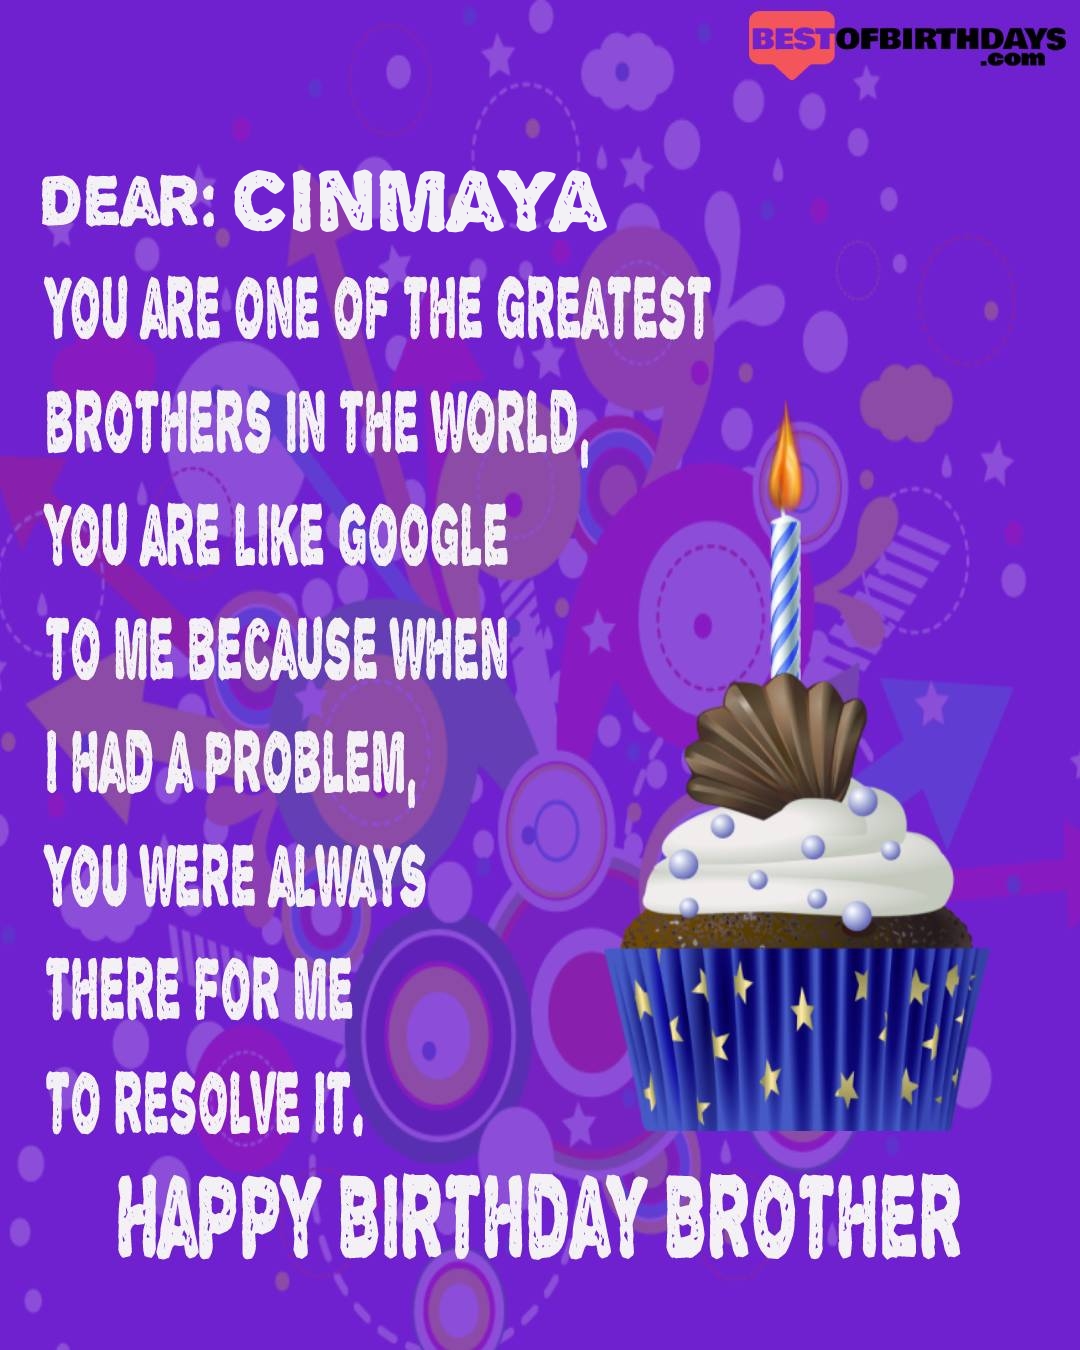 Happy birthday cinmaya bhai brother bro